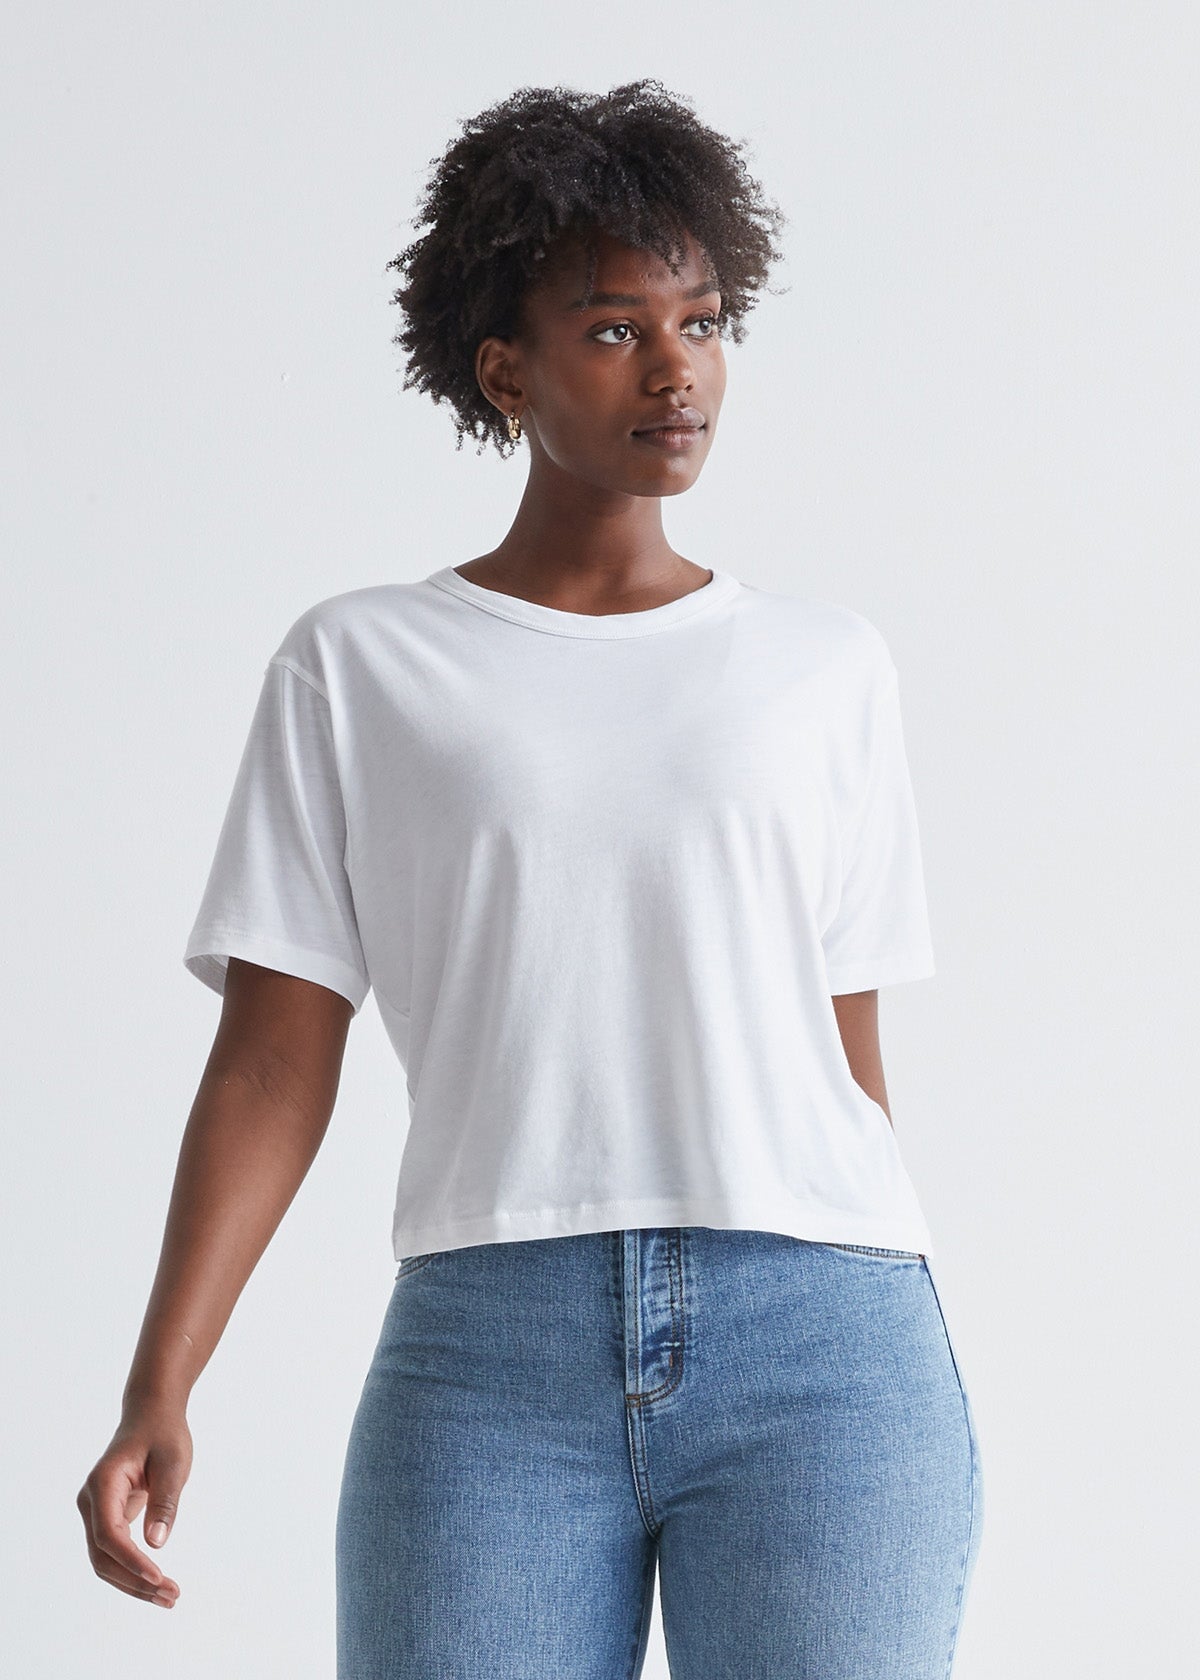 Women's white lightweight soft crop tshirt front